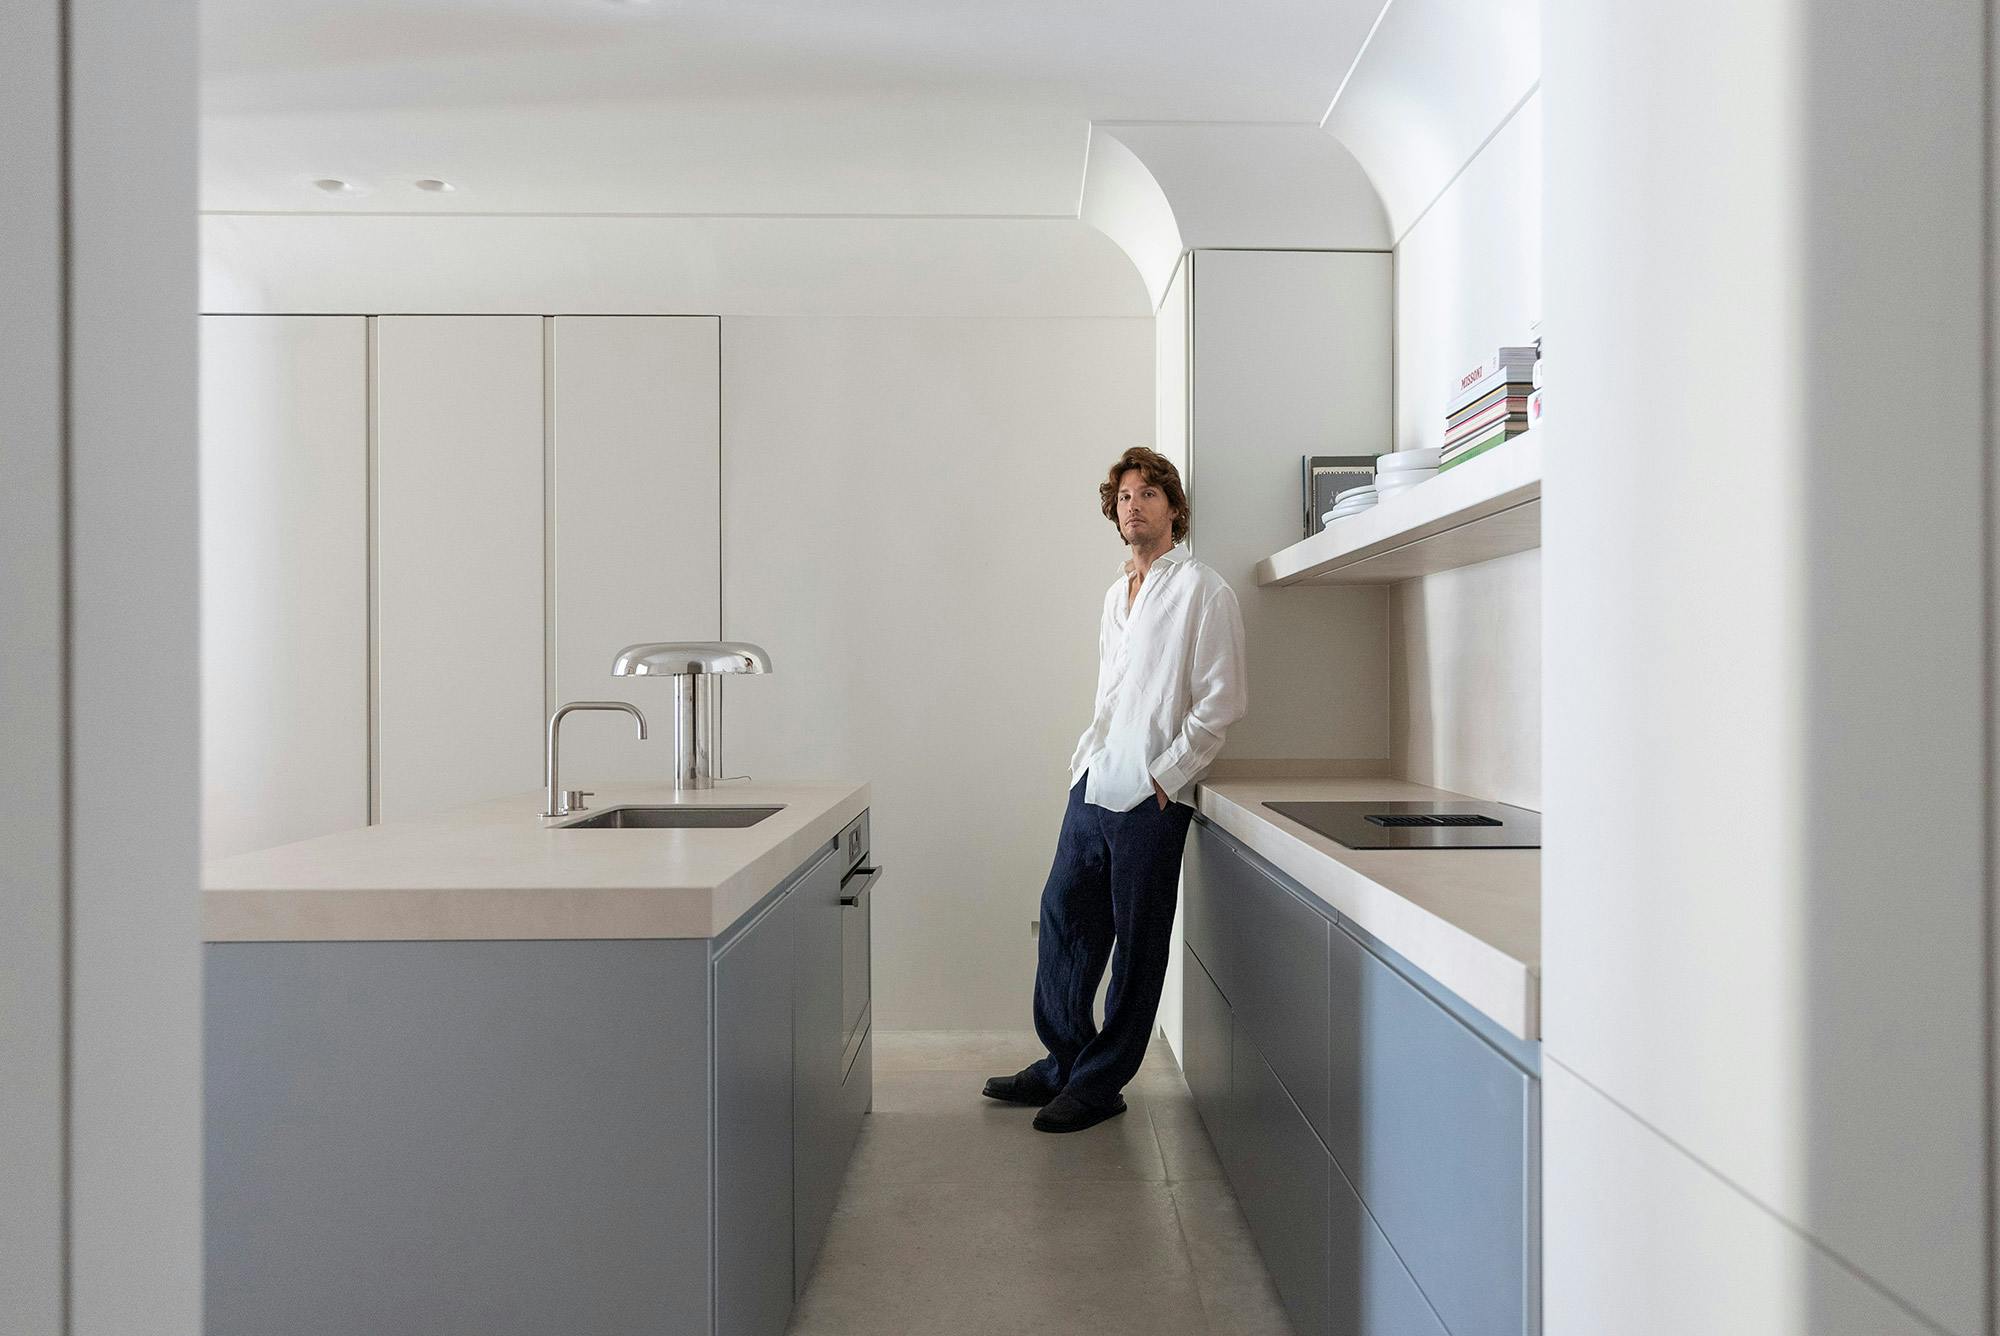 Numero immagine 43 della sezione corrente di Dekton Arga creates an elegant atmosphere in this open plan kitchen with a minimalist approach di Cosentino Italia